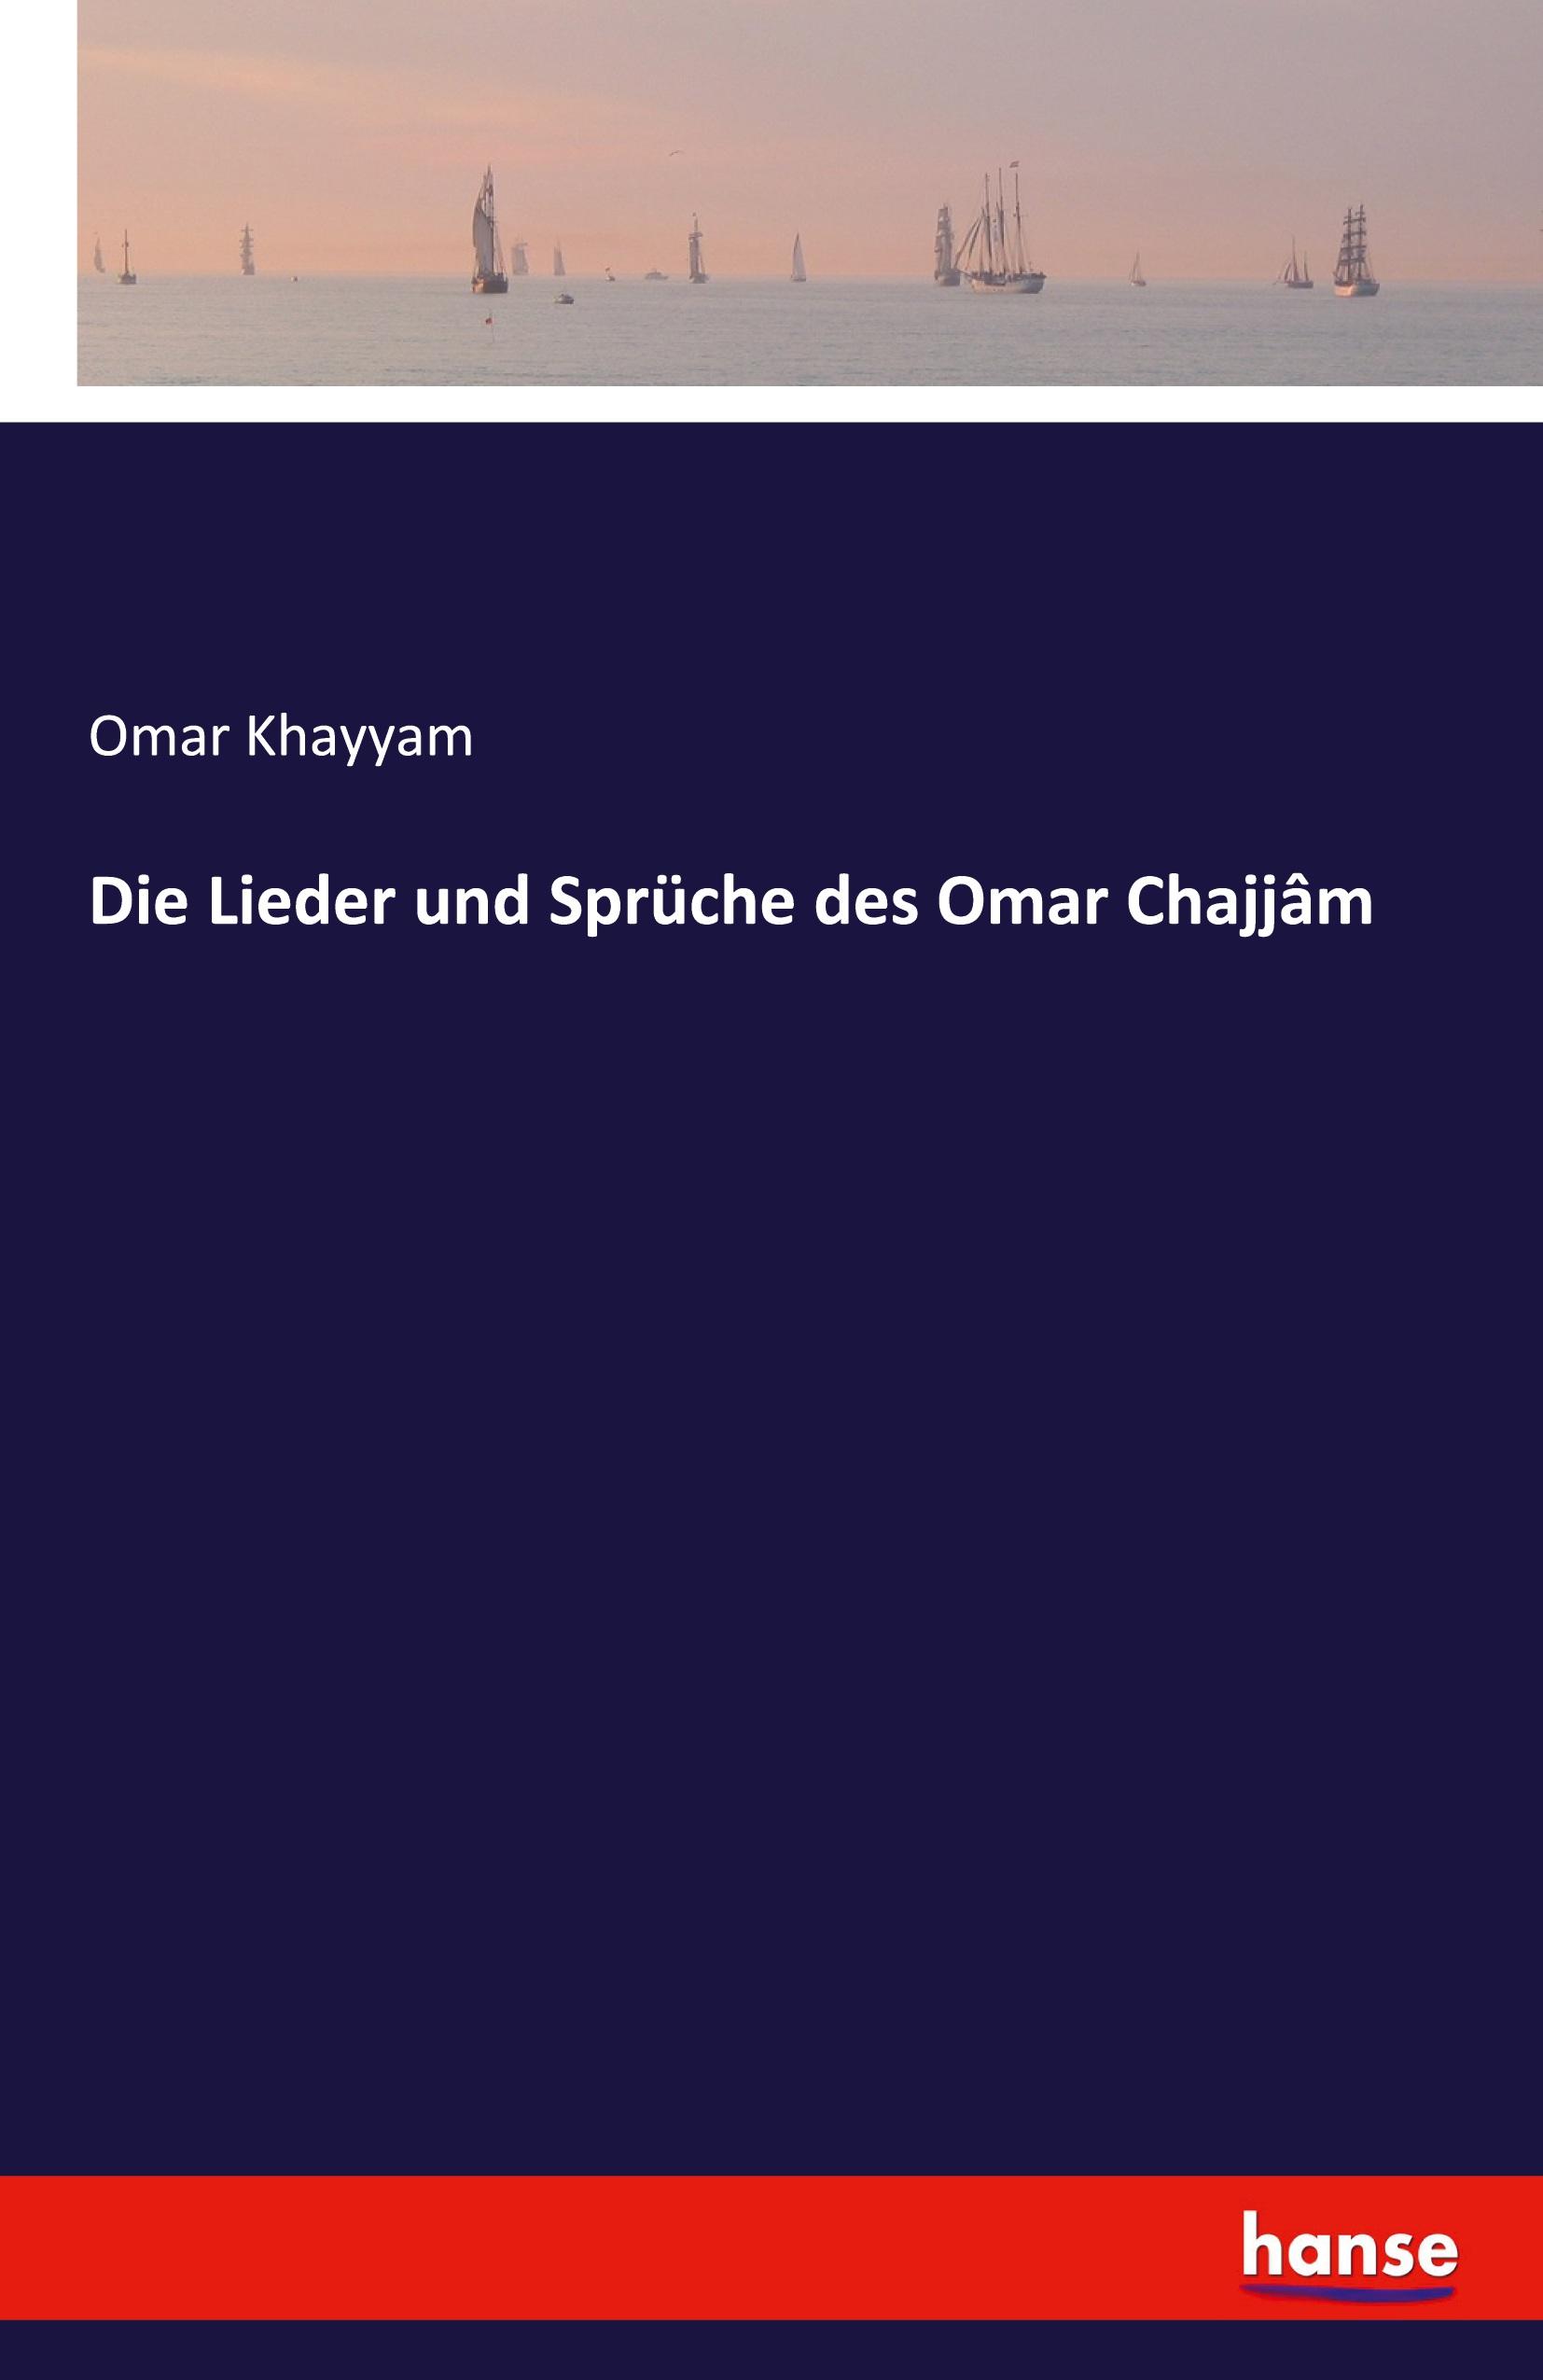 Die Lieder und Sprüche des Omar Chajjâm / Omar Khayyam / Taschenbuch / Paperback / 244 S. / Deutsch / 2021 / hansebooks / EAN 9783741127045 - Khayyam, Omar